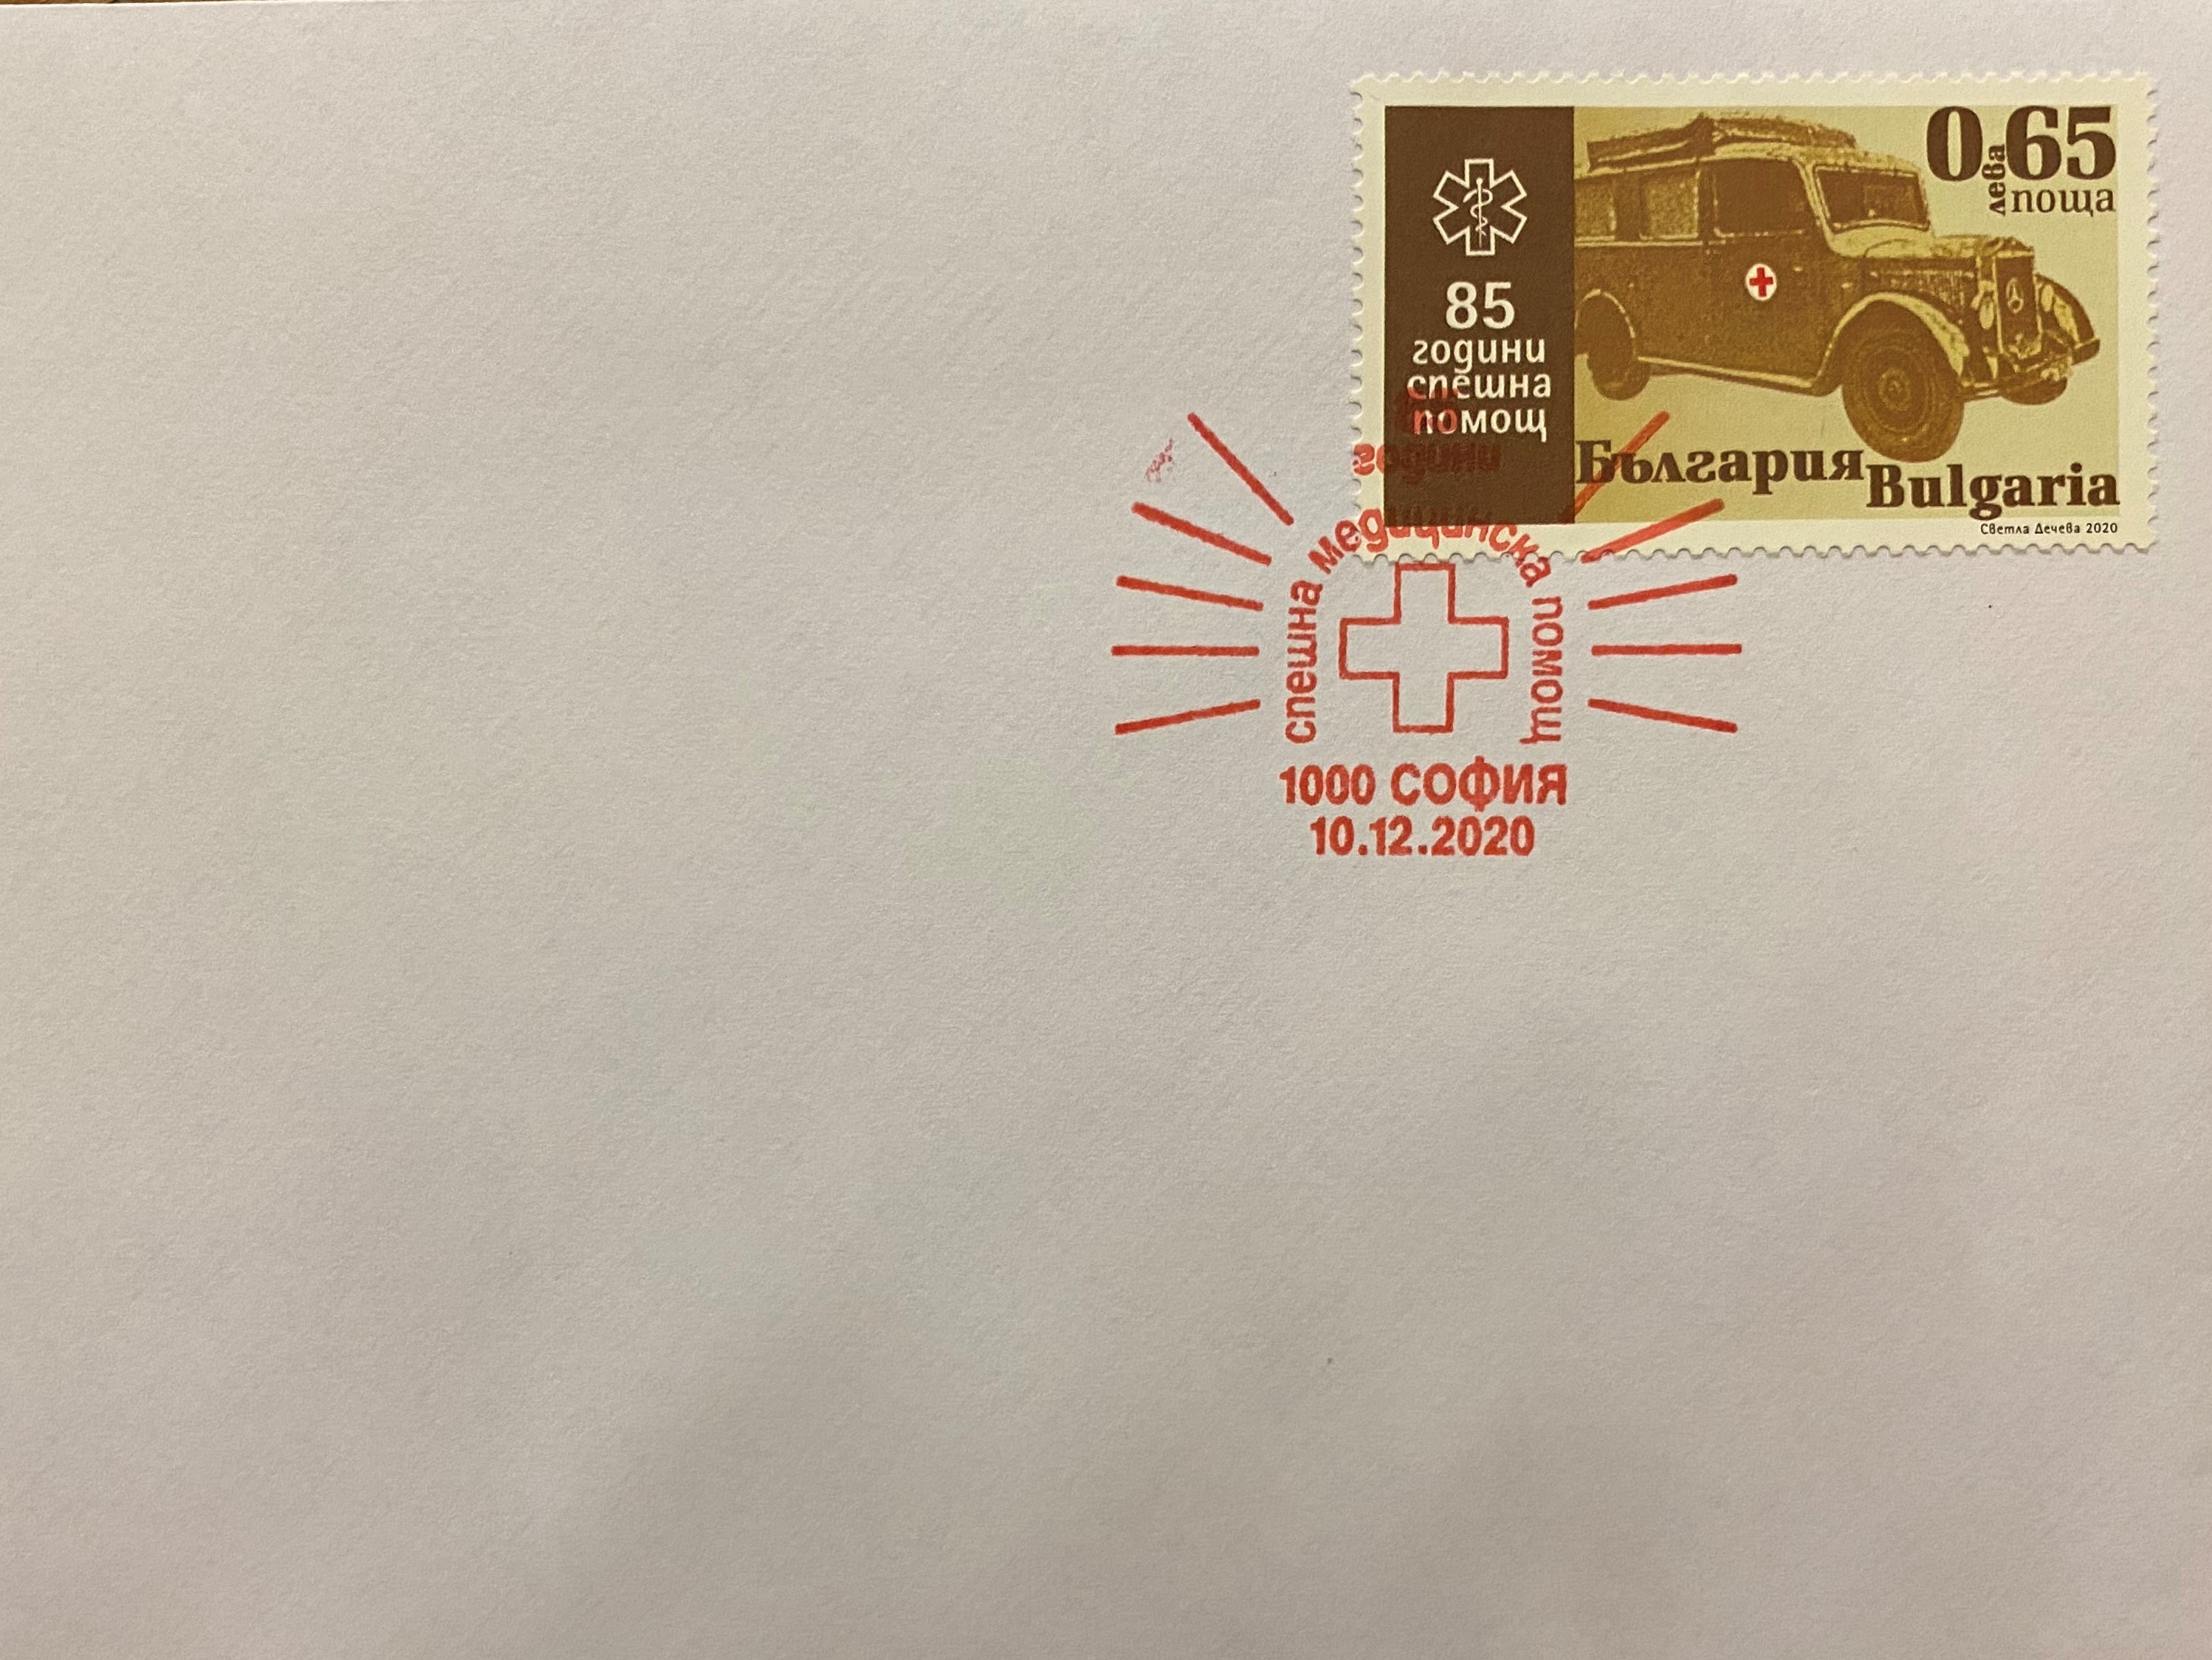 Министрите Росен Желязков и Костадин Ангелов валидираха пощенска марка, посветена на медиците на първа линия